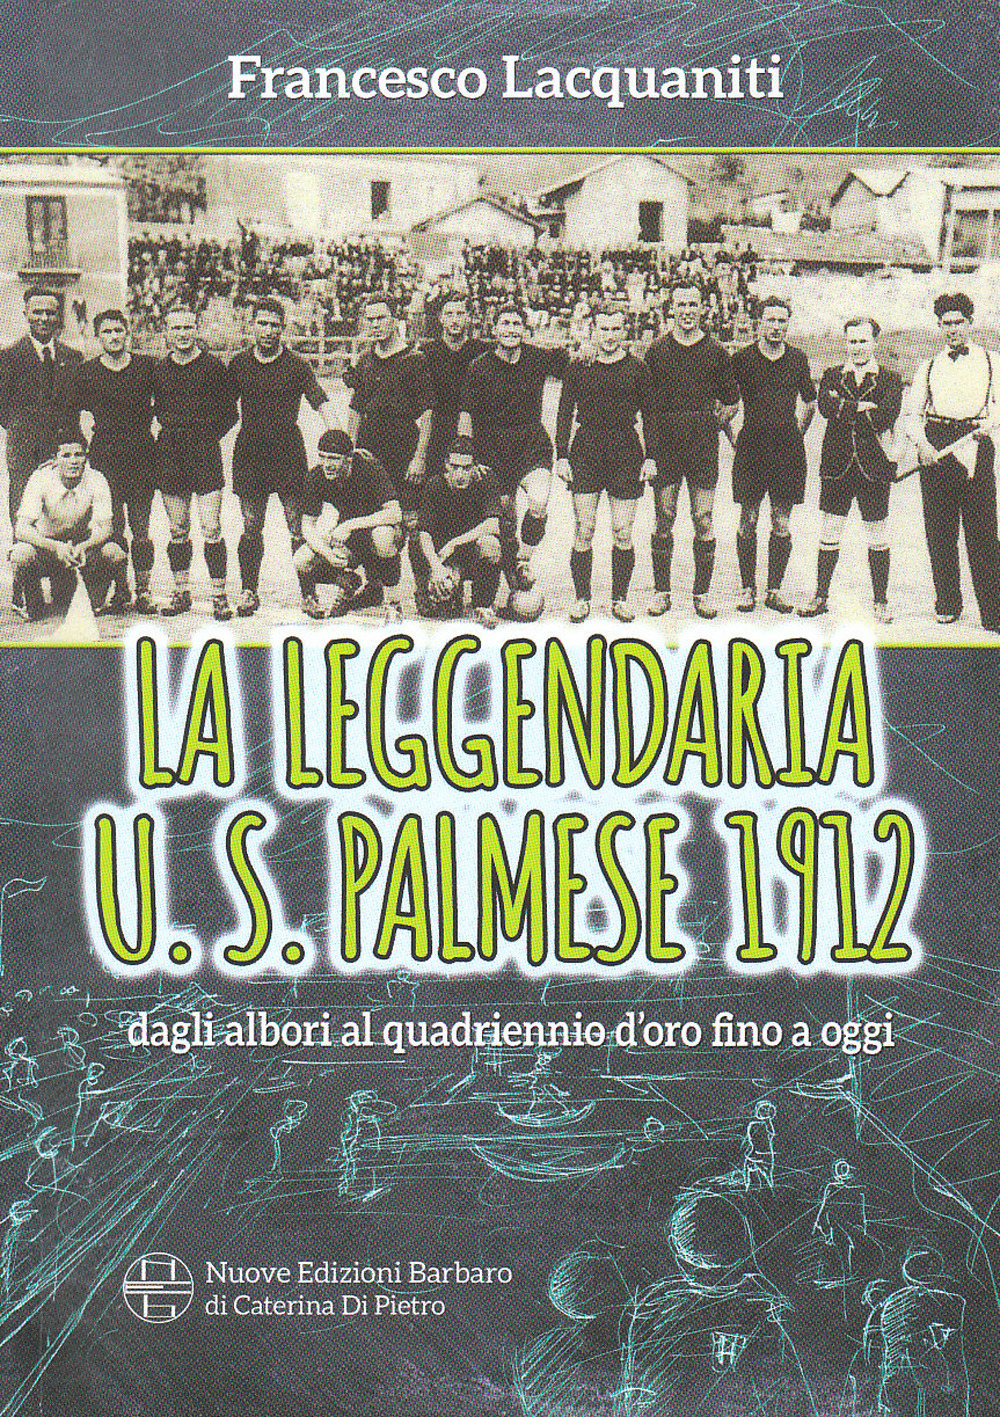 La leggendaria U. S. Palmese 1912, dagli albori al quadriennio d'oro fino ad oggi